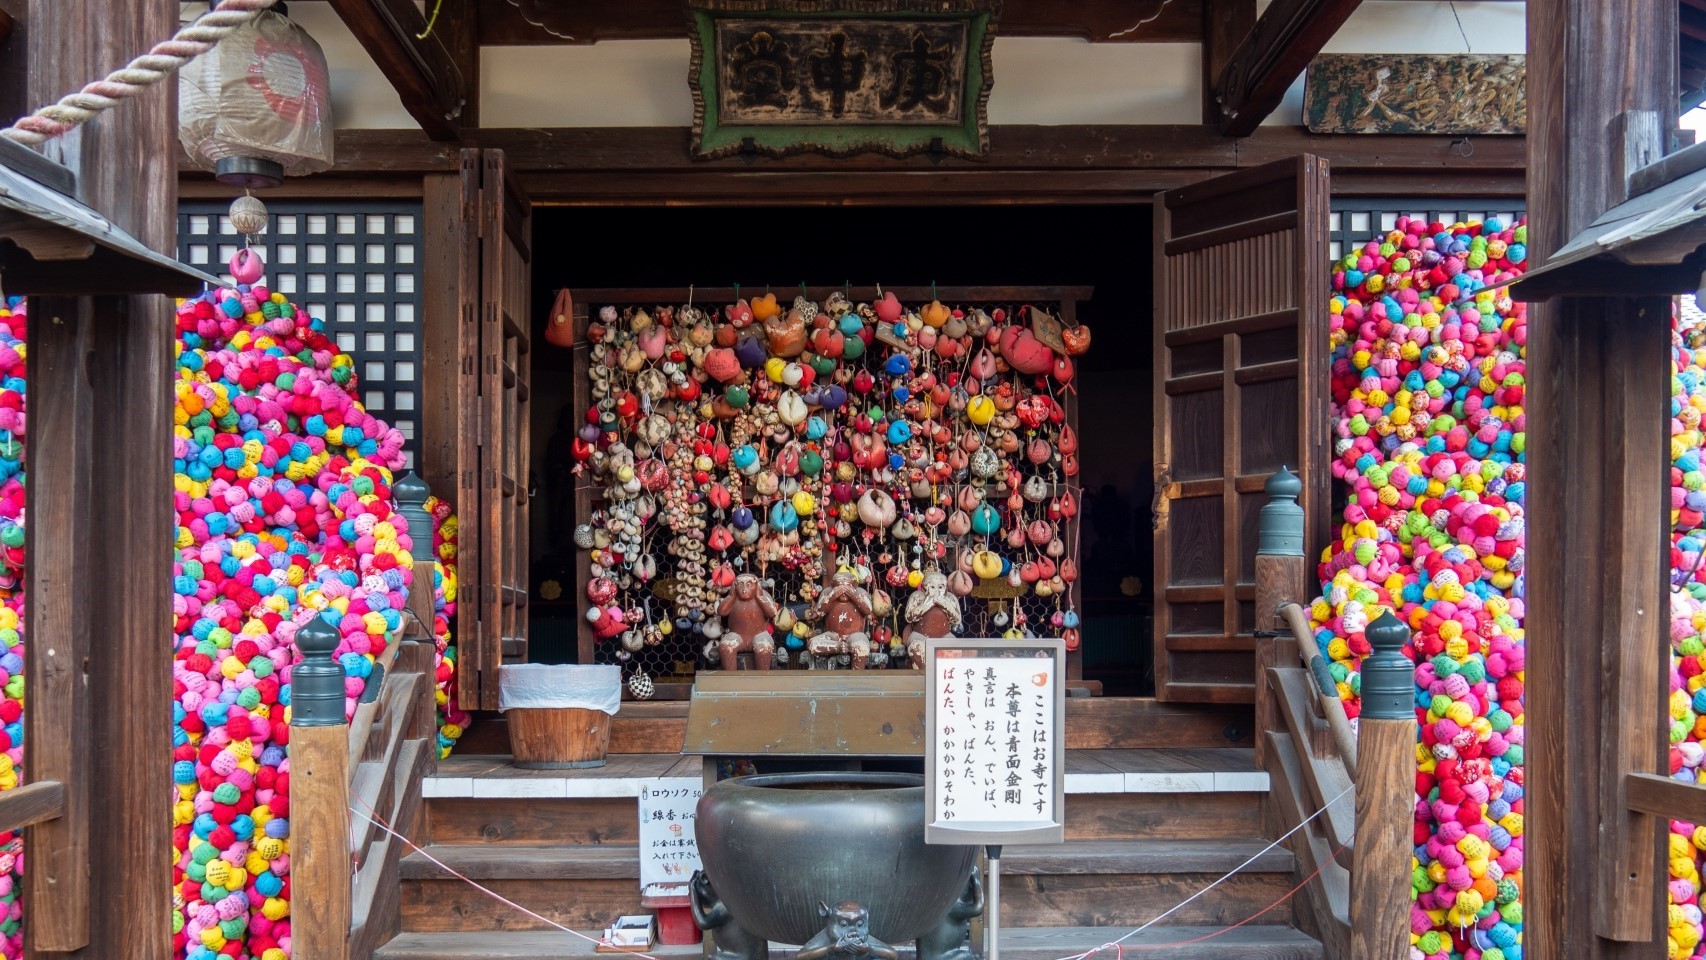 ■八坂庚申堂■カラフルなくくり猿というお守りで彩られた神社。絶好のフォトスポットです。